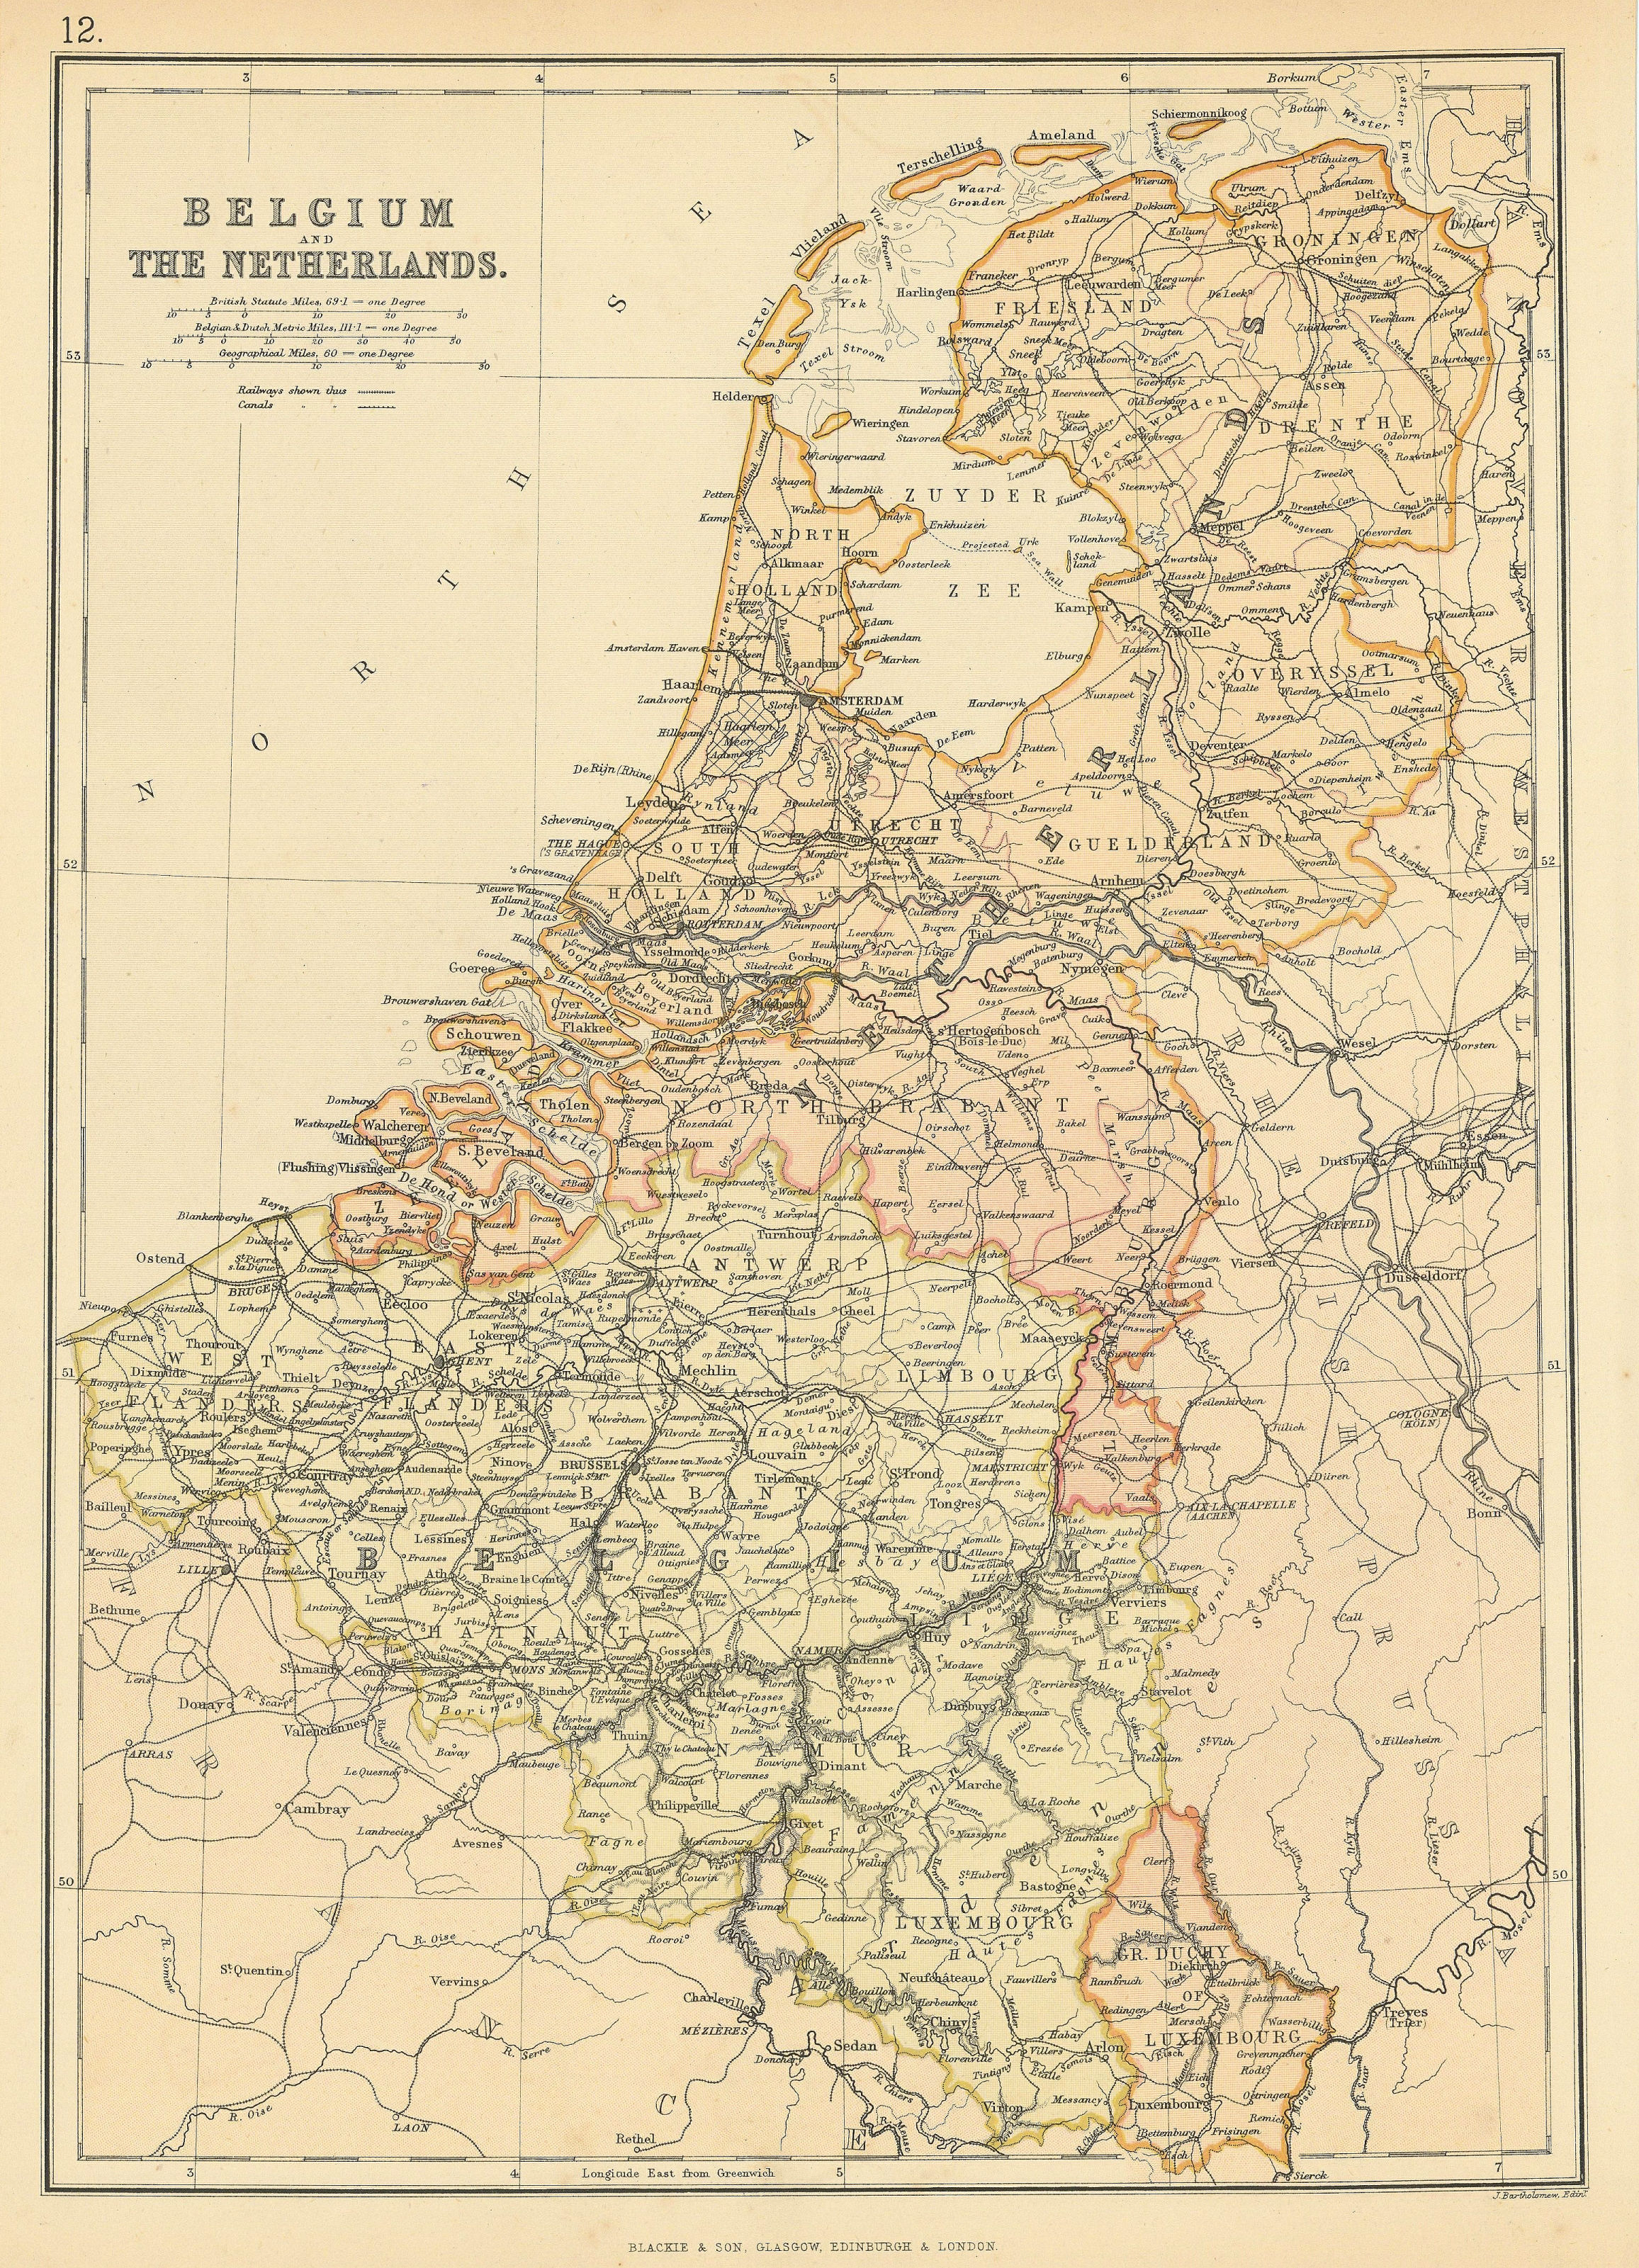 BELGIUM & NETHERLANDS. Railways. canals. Scale in Belgian/Dutch miles 1886 map